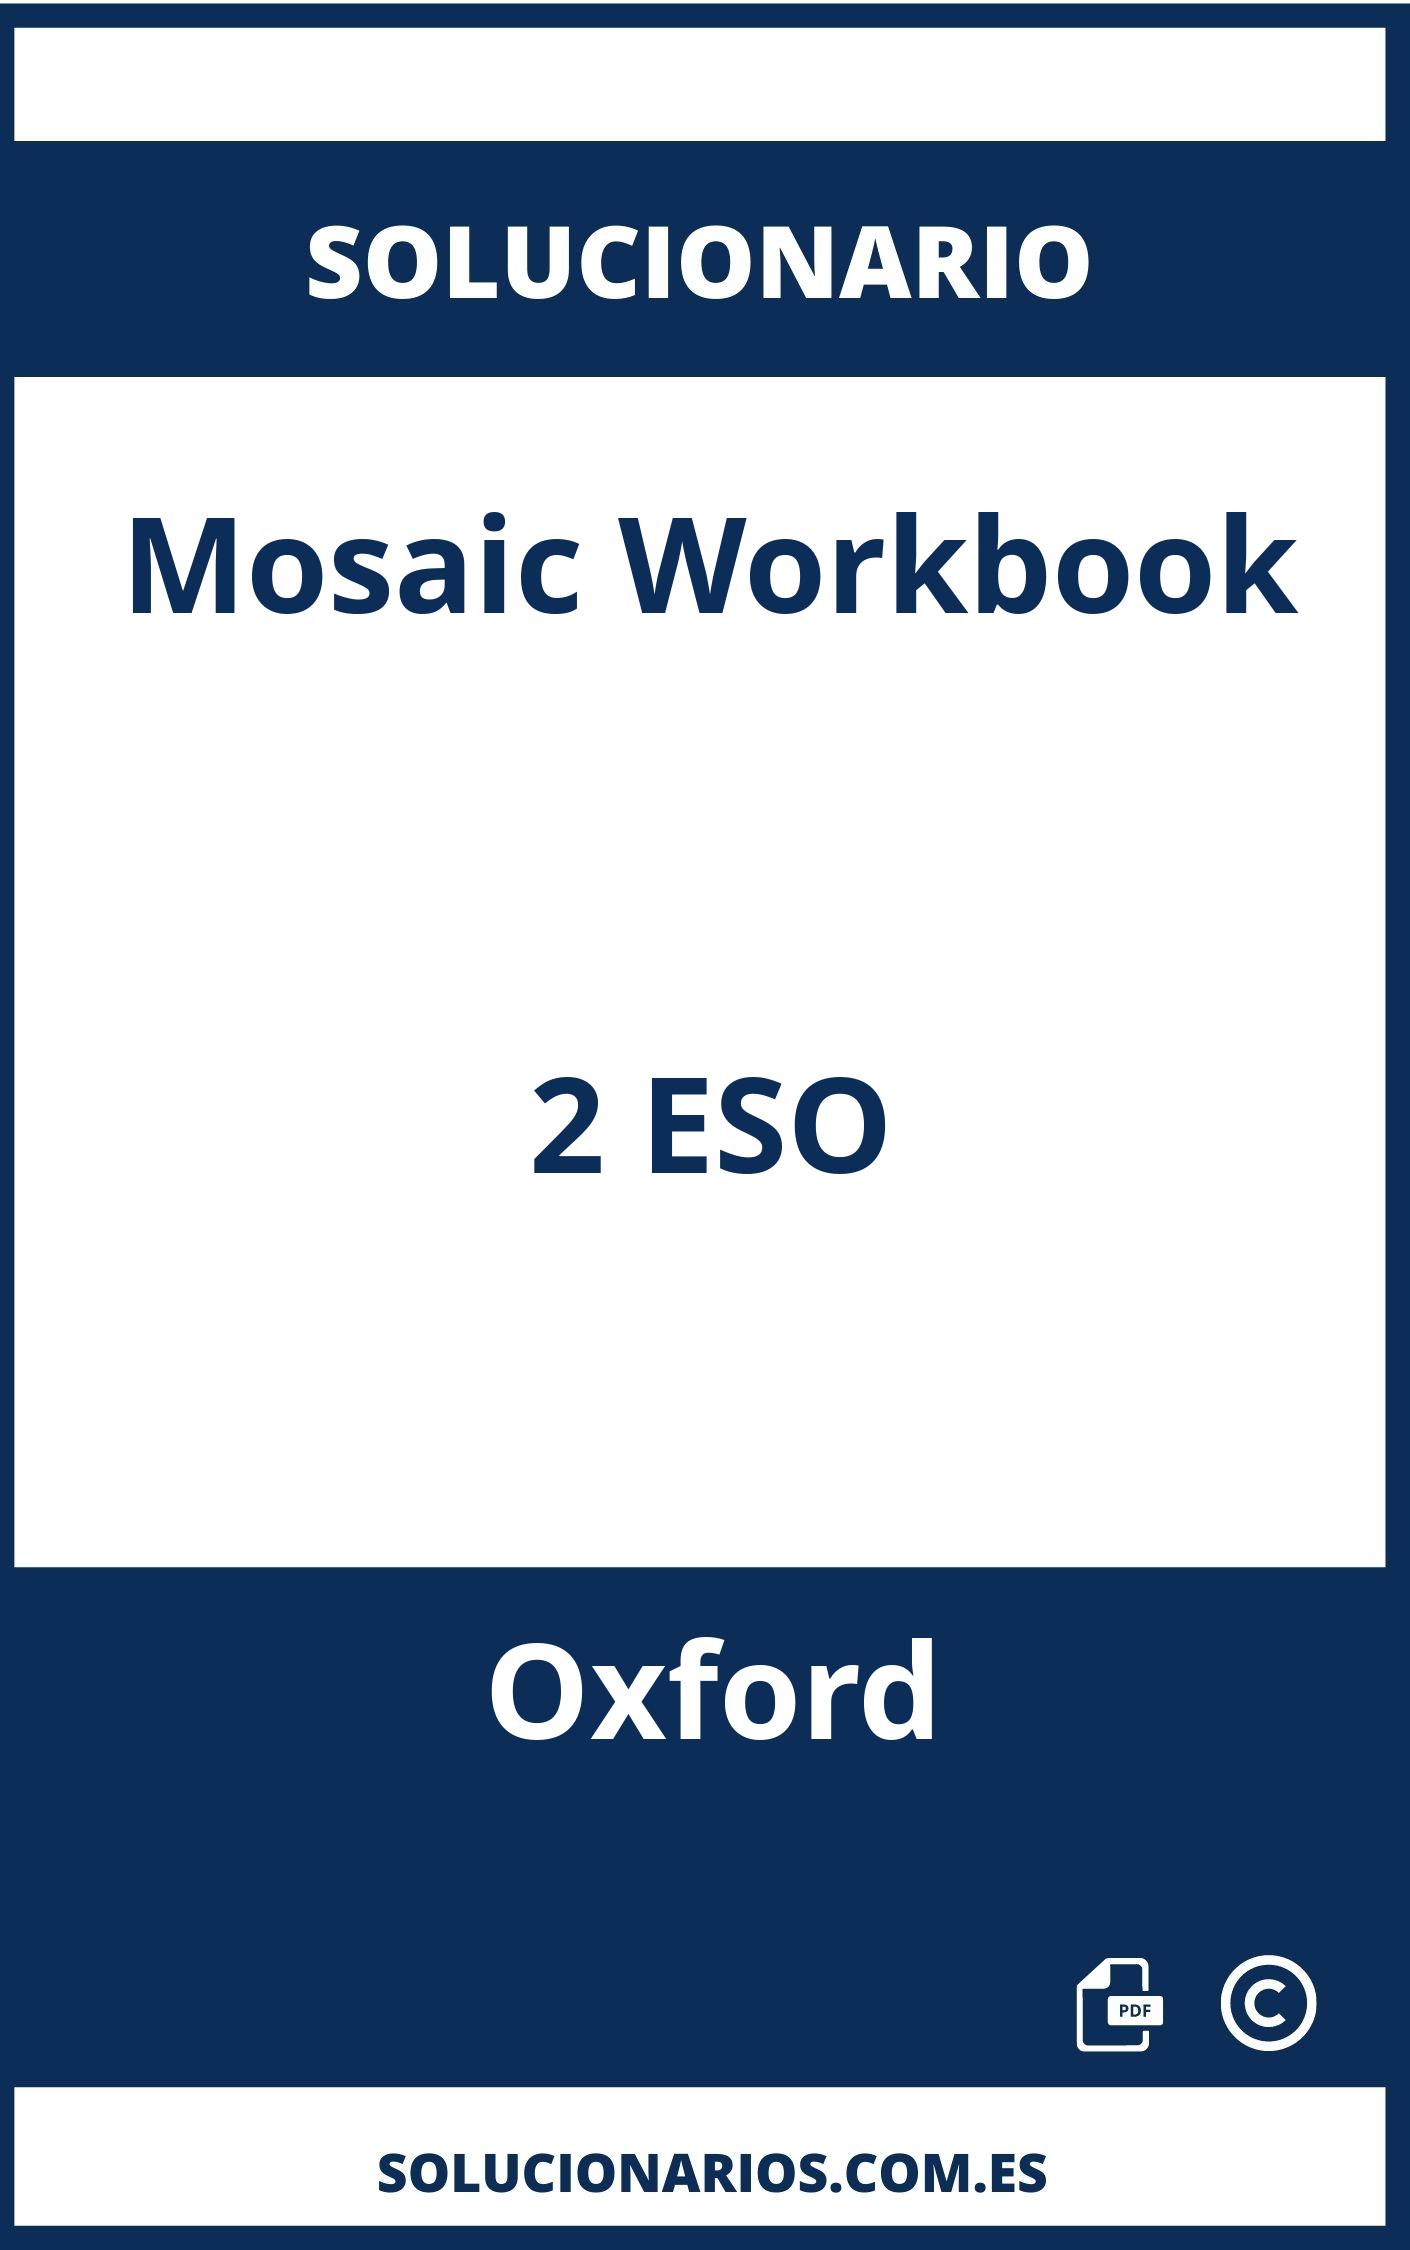 Solucionario Mosaic Workbook 2 ESO Oxford